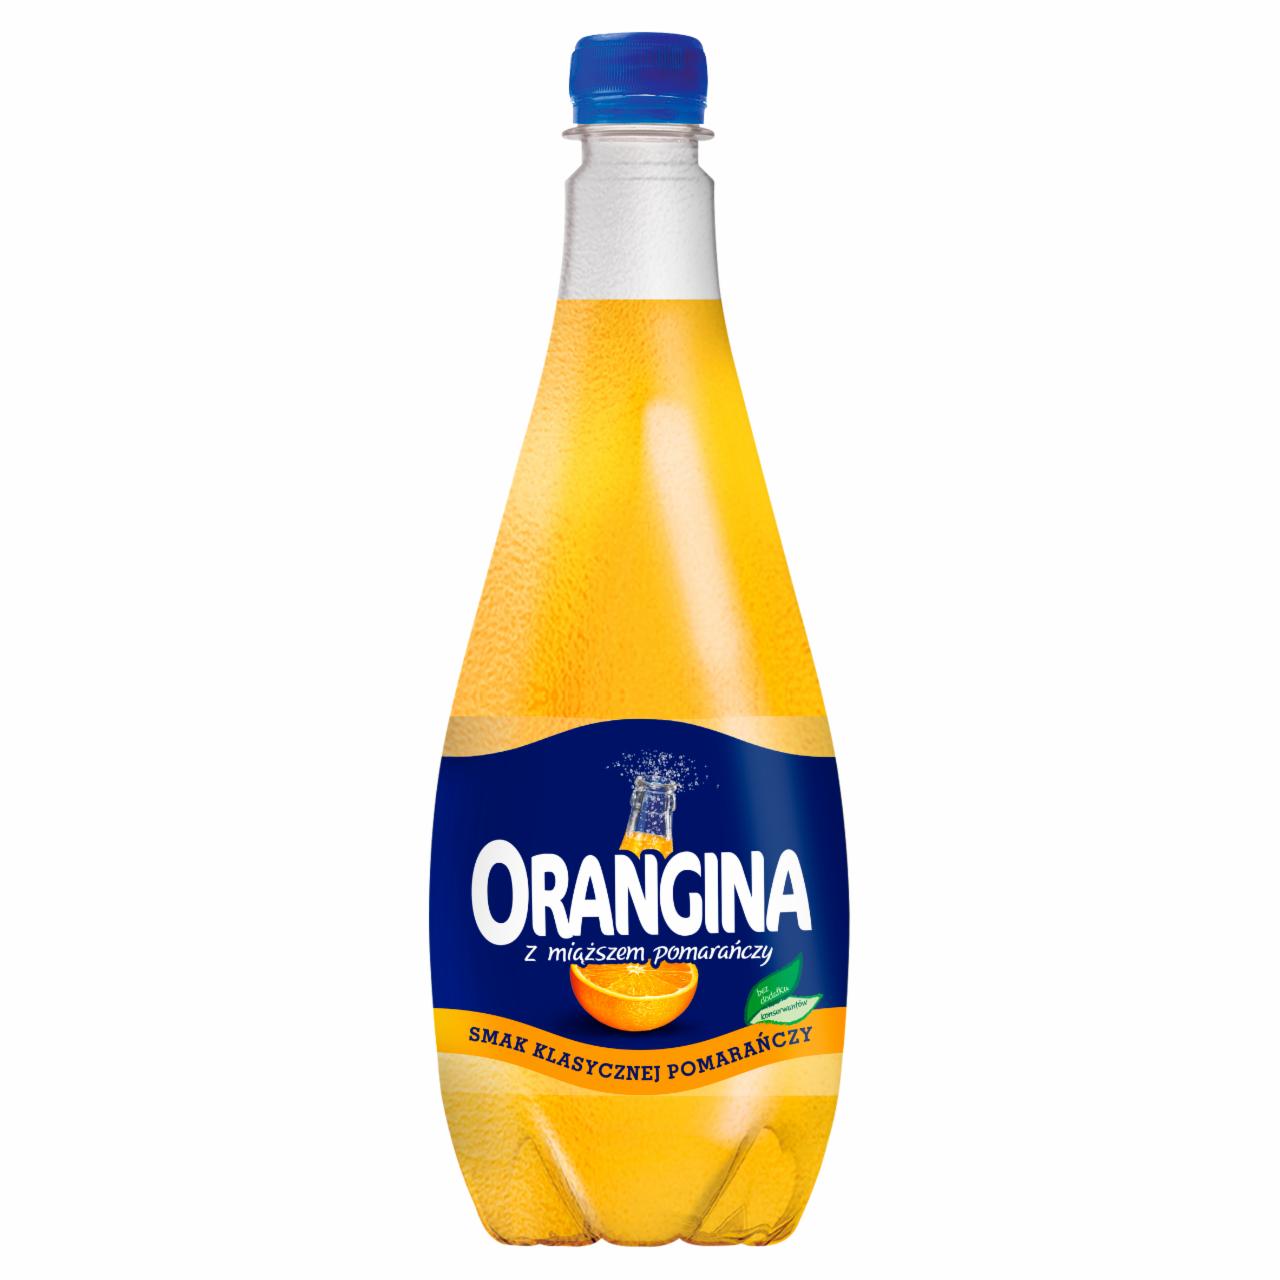 Zdjęcia - Orangina Original Napój gazowany smak klasycznej pomarańczy 0,9 l